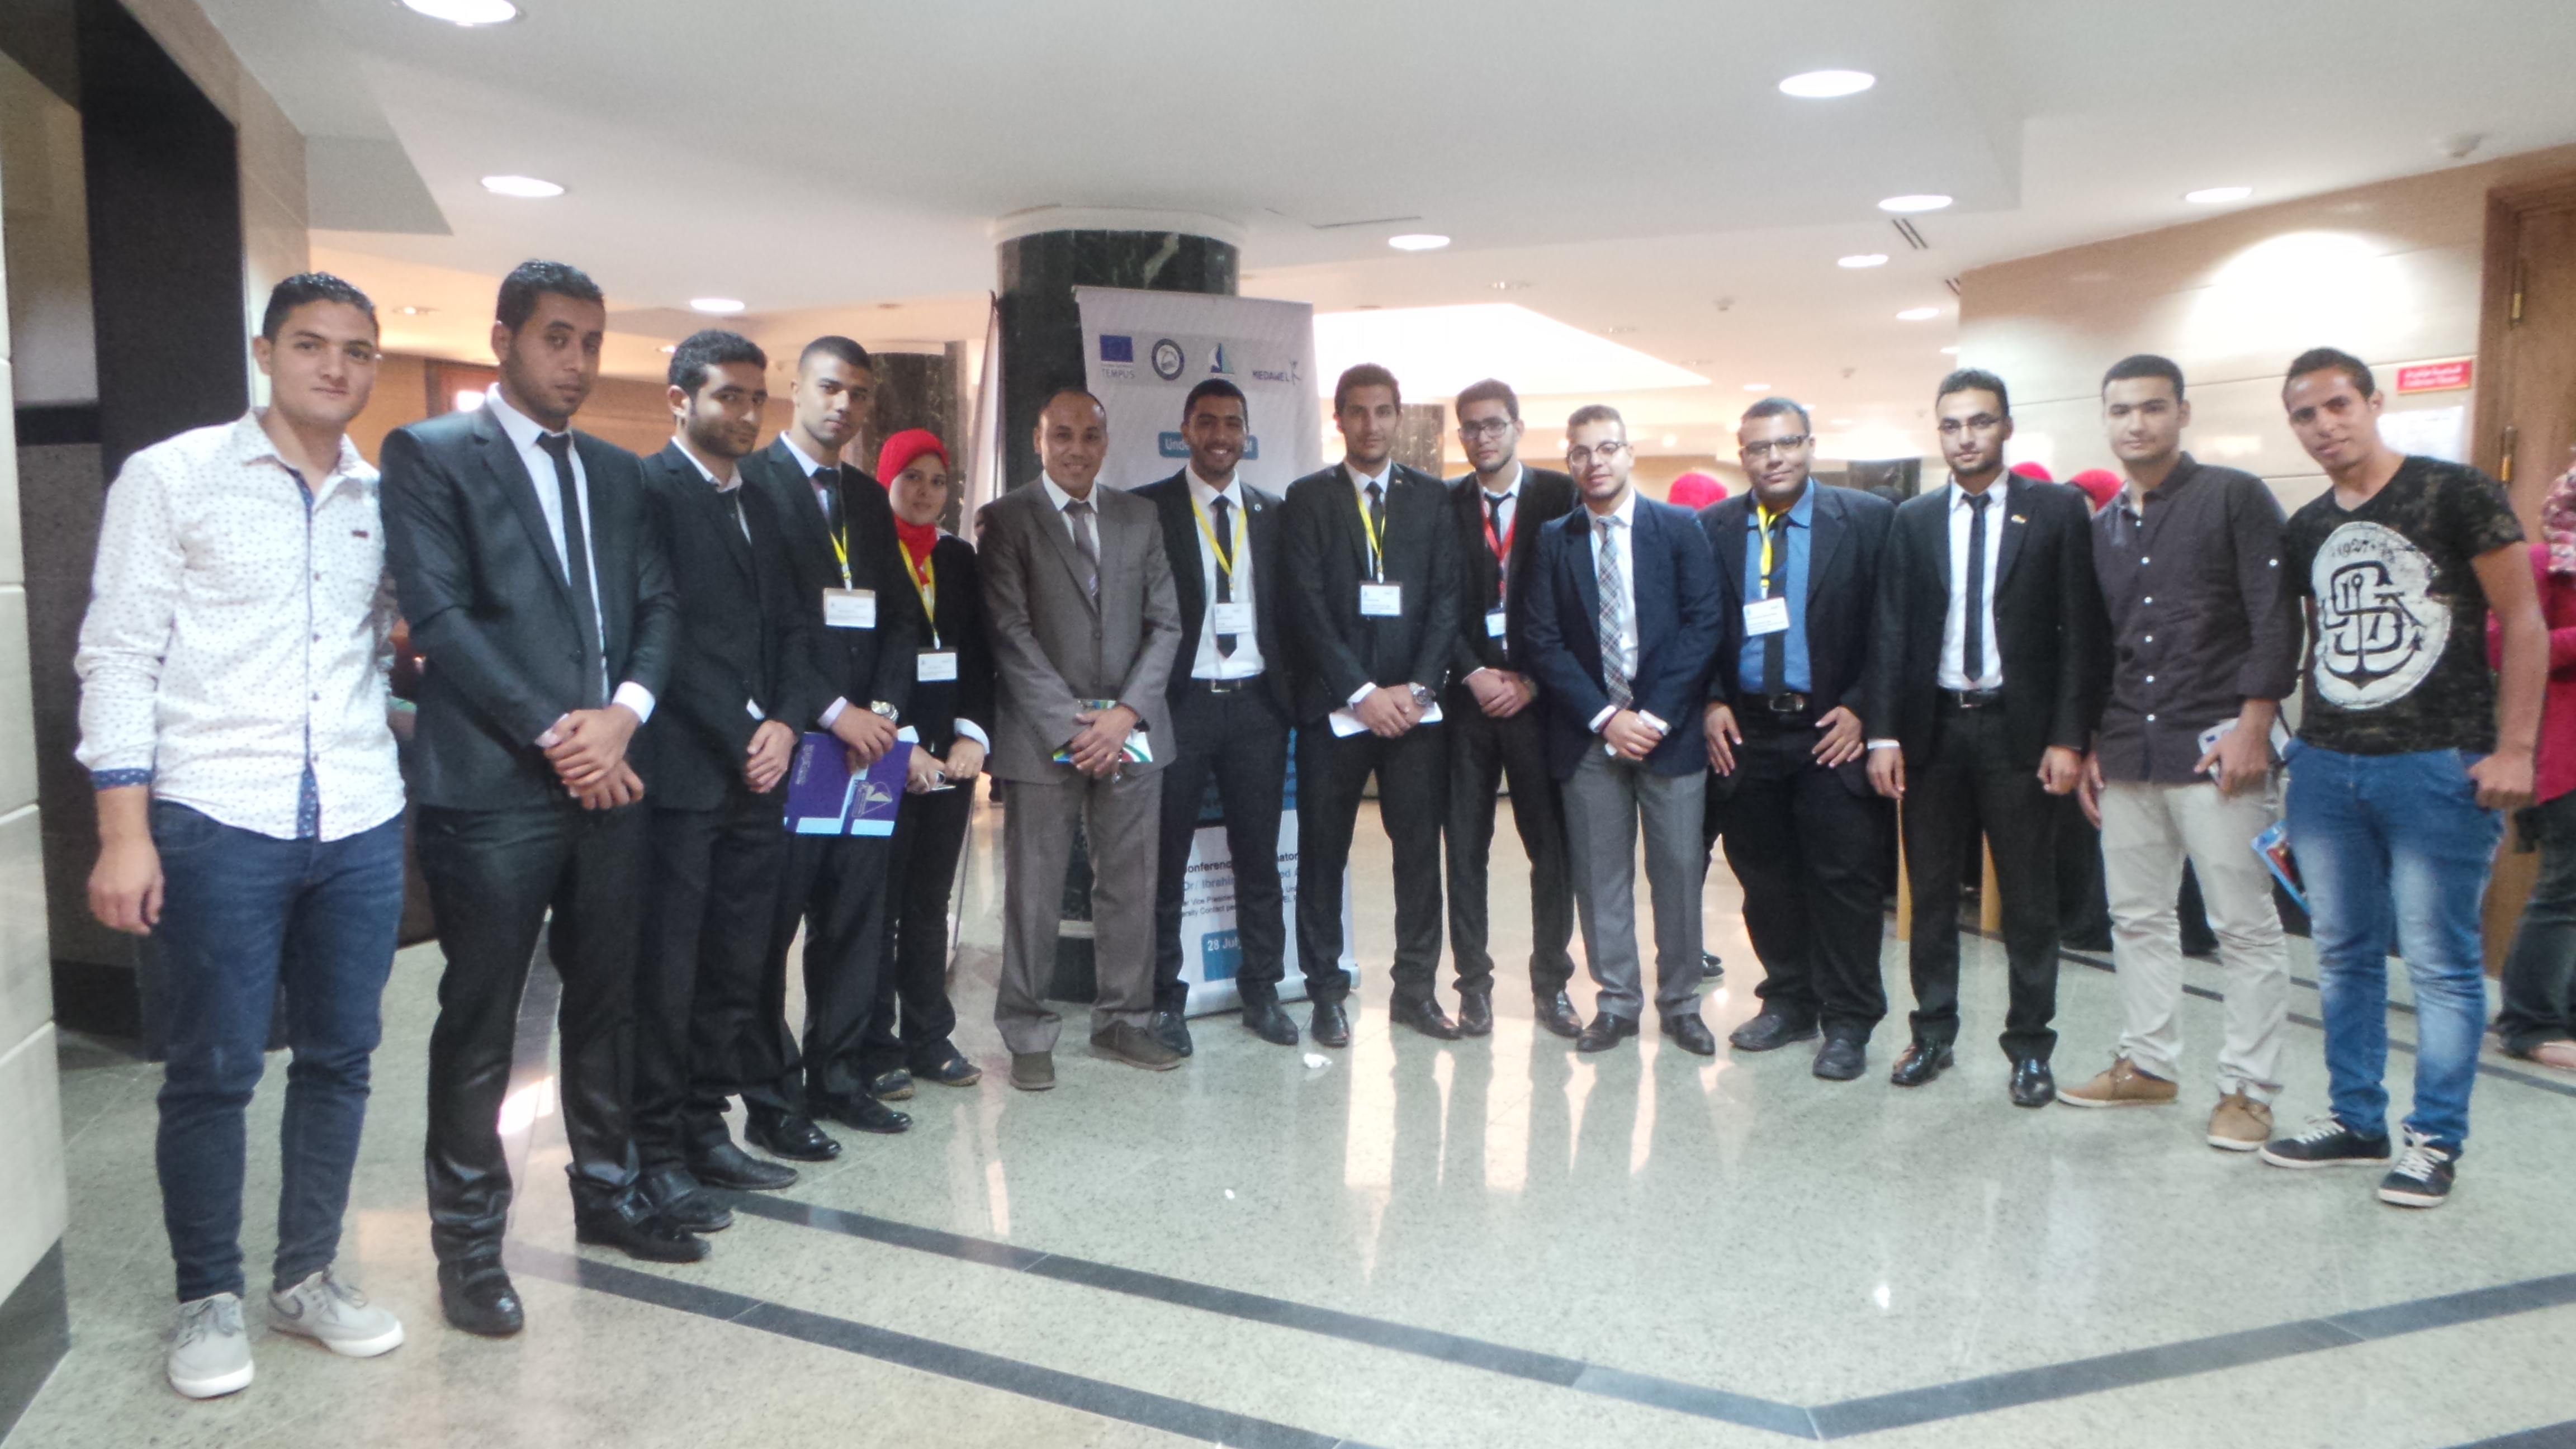  المؤتمر الطلابي  بجامعة كفر الشيخ  بحضور 12 جامعة عربية وأجنبيه 